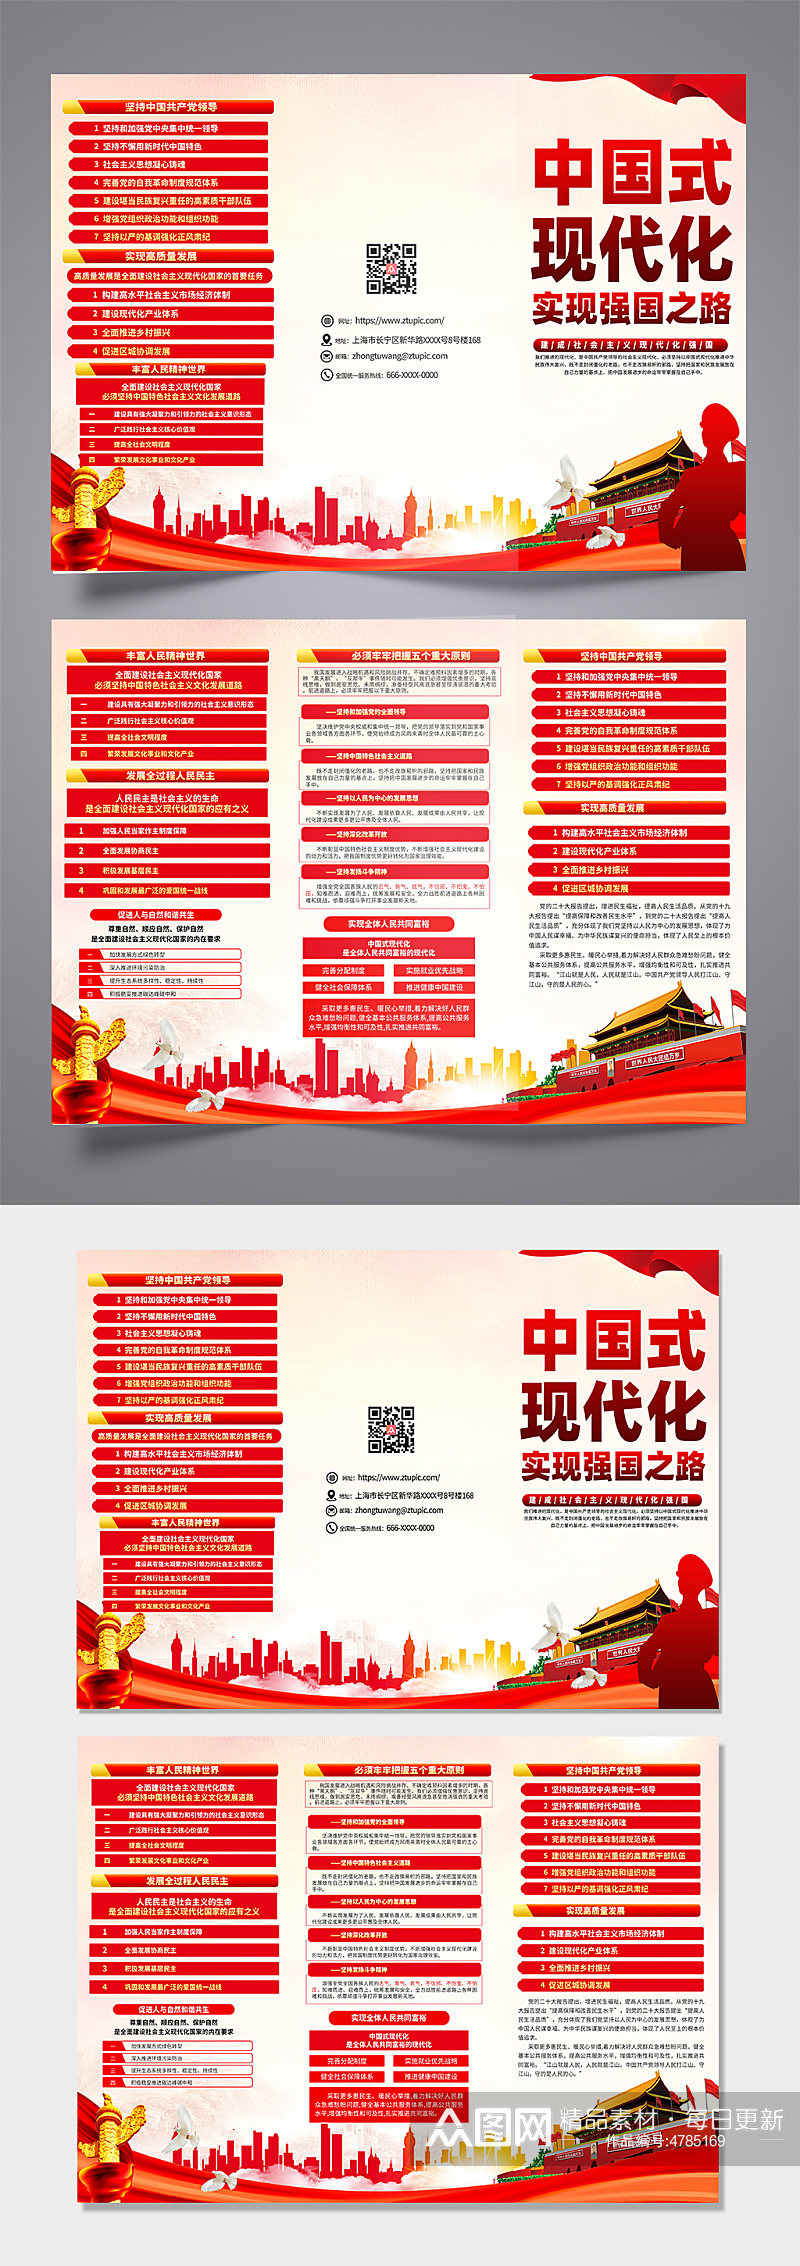 创意大气中国式现代化之路党建三折页设计素材